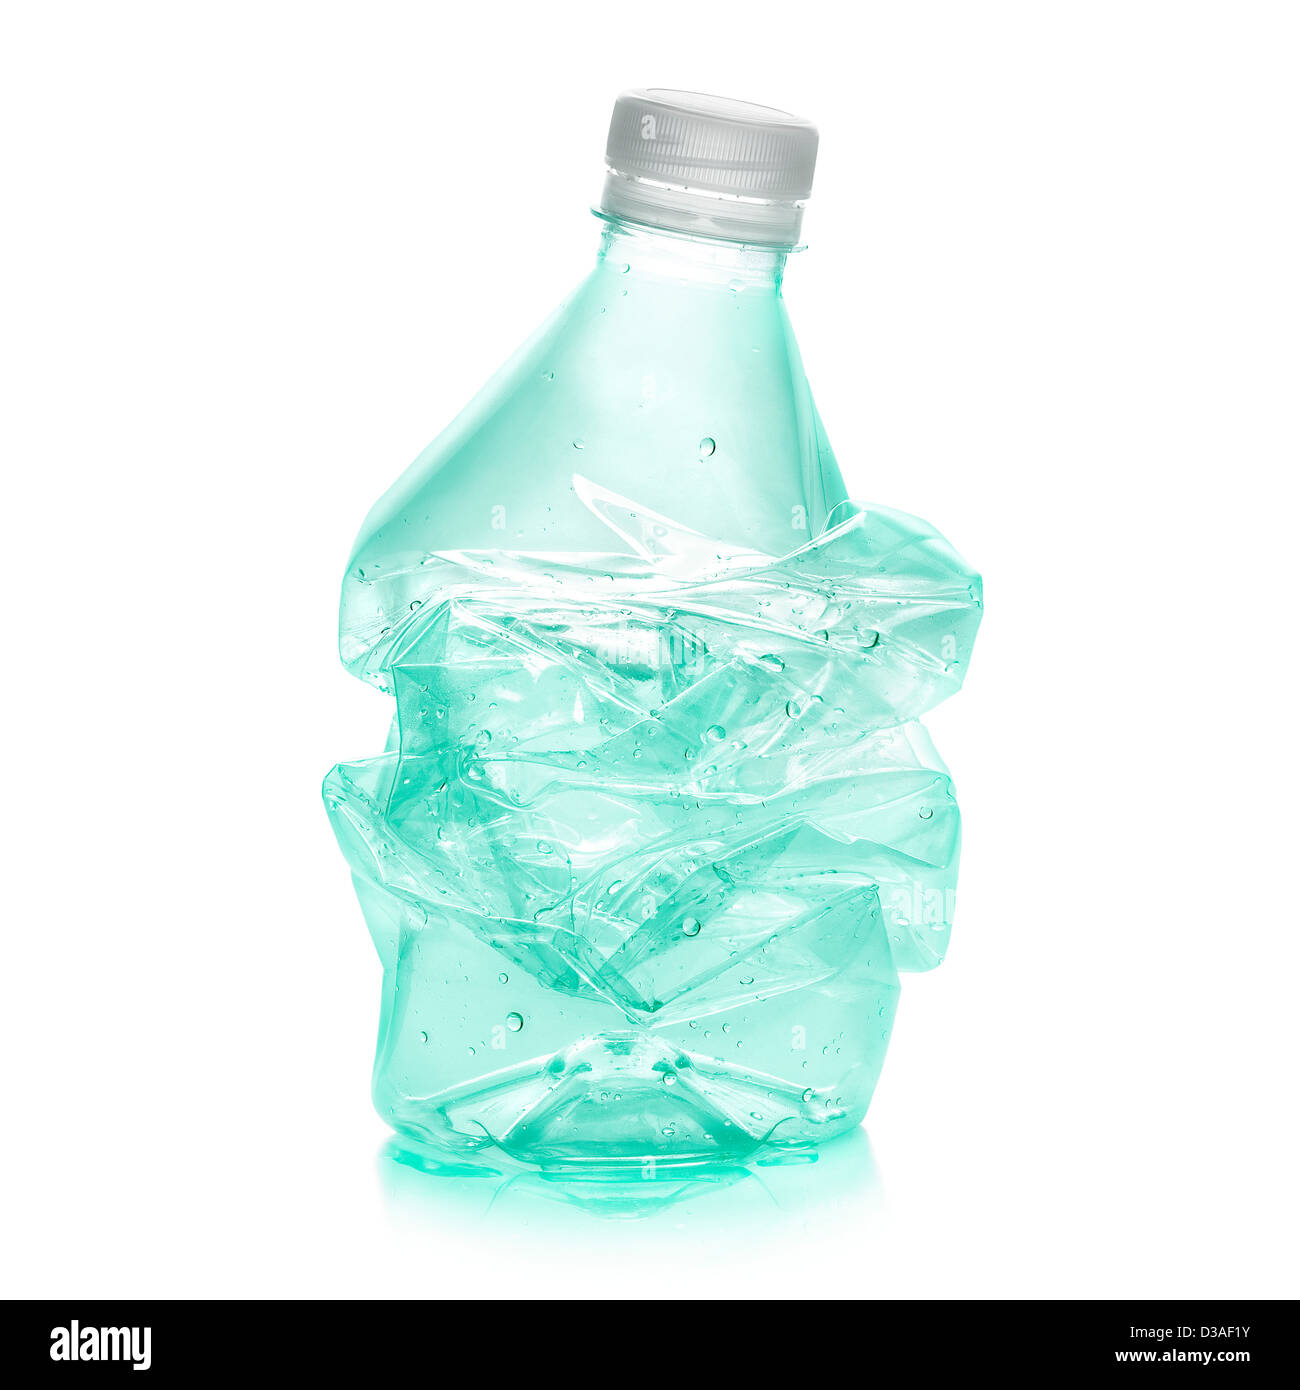 Limpieza de botellas de vidrio y garrafas - Blog sobre ecología